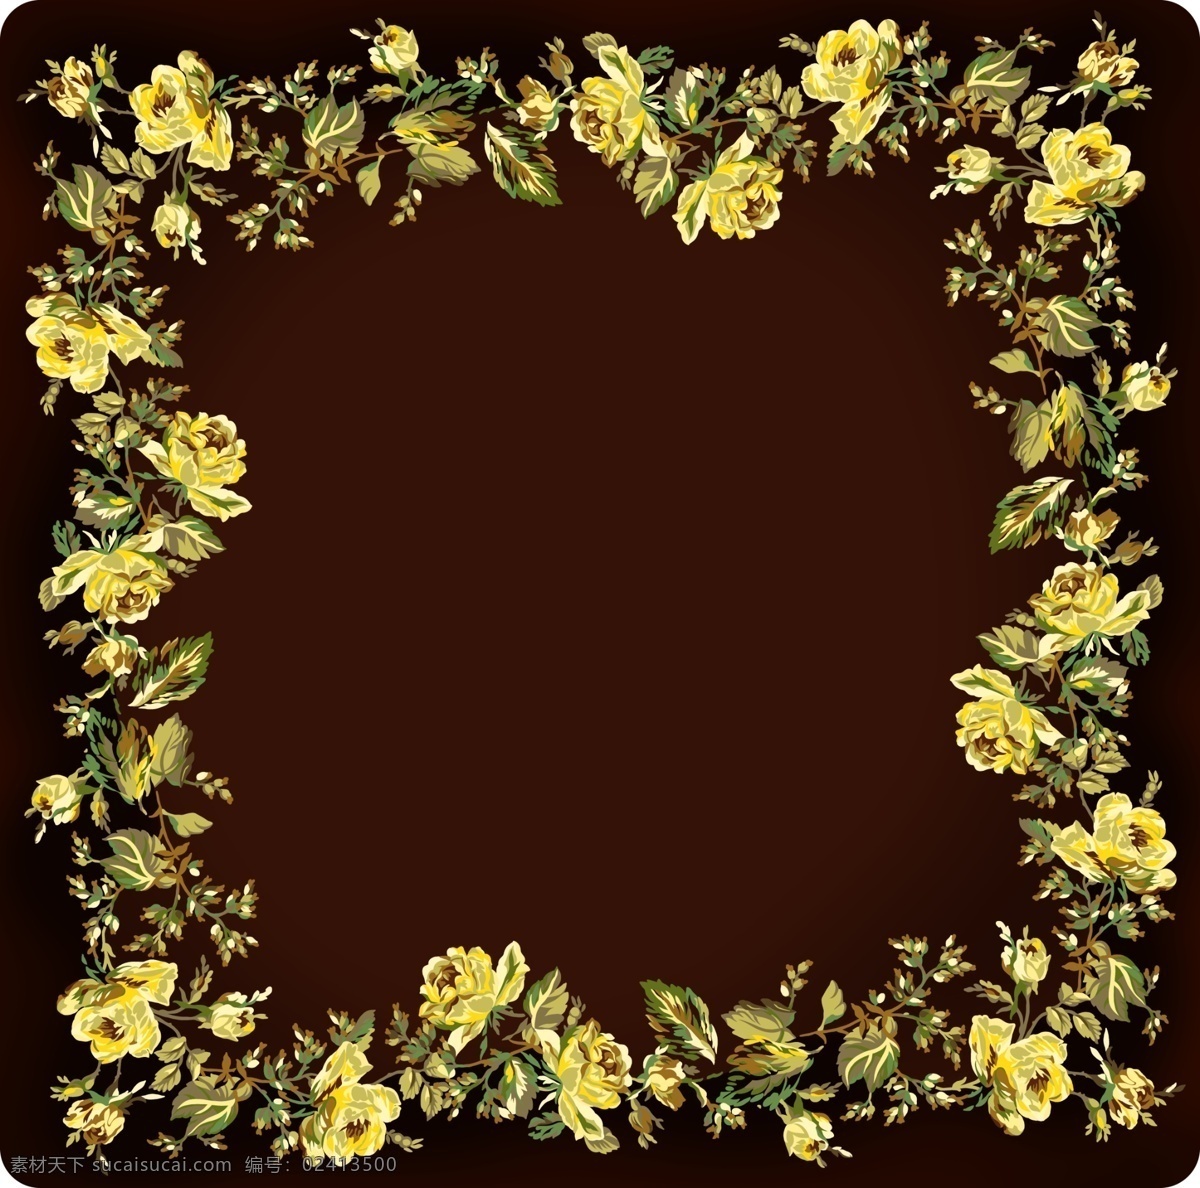 土豪金花相框 装饰花卉 贺卡 分层 鲜花 黄色 相框 花边 花藤 欧式 土豪金 黑色